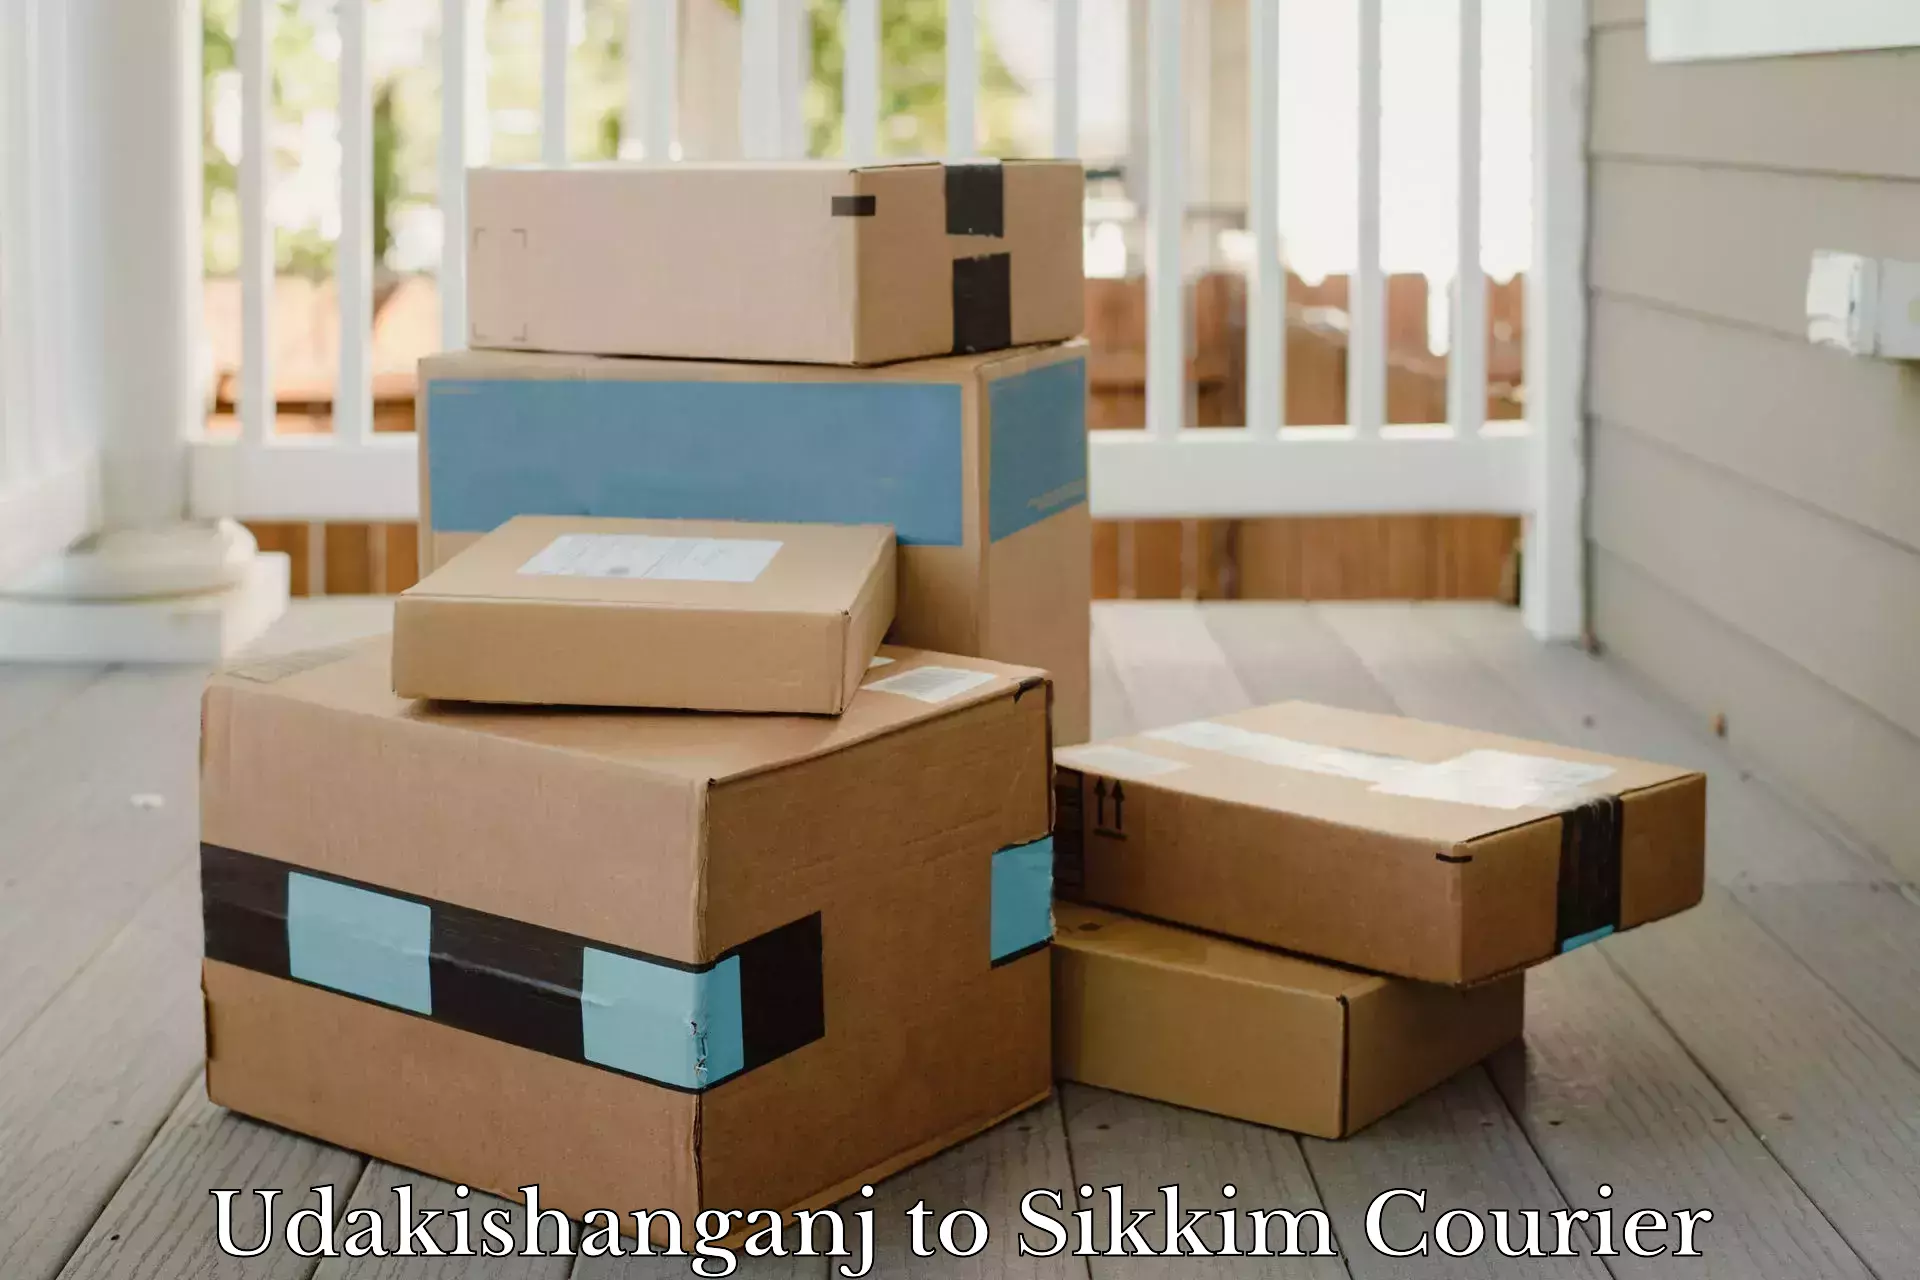 Full-service courier options Udakishanganj to West Sikkim